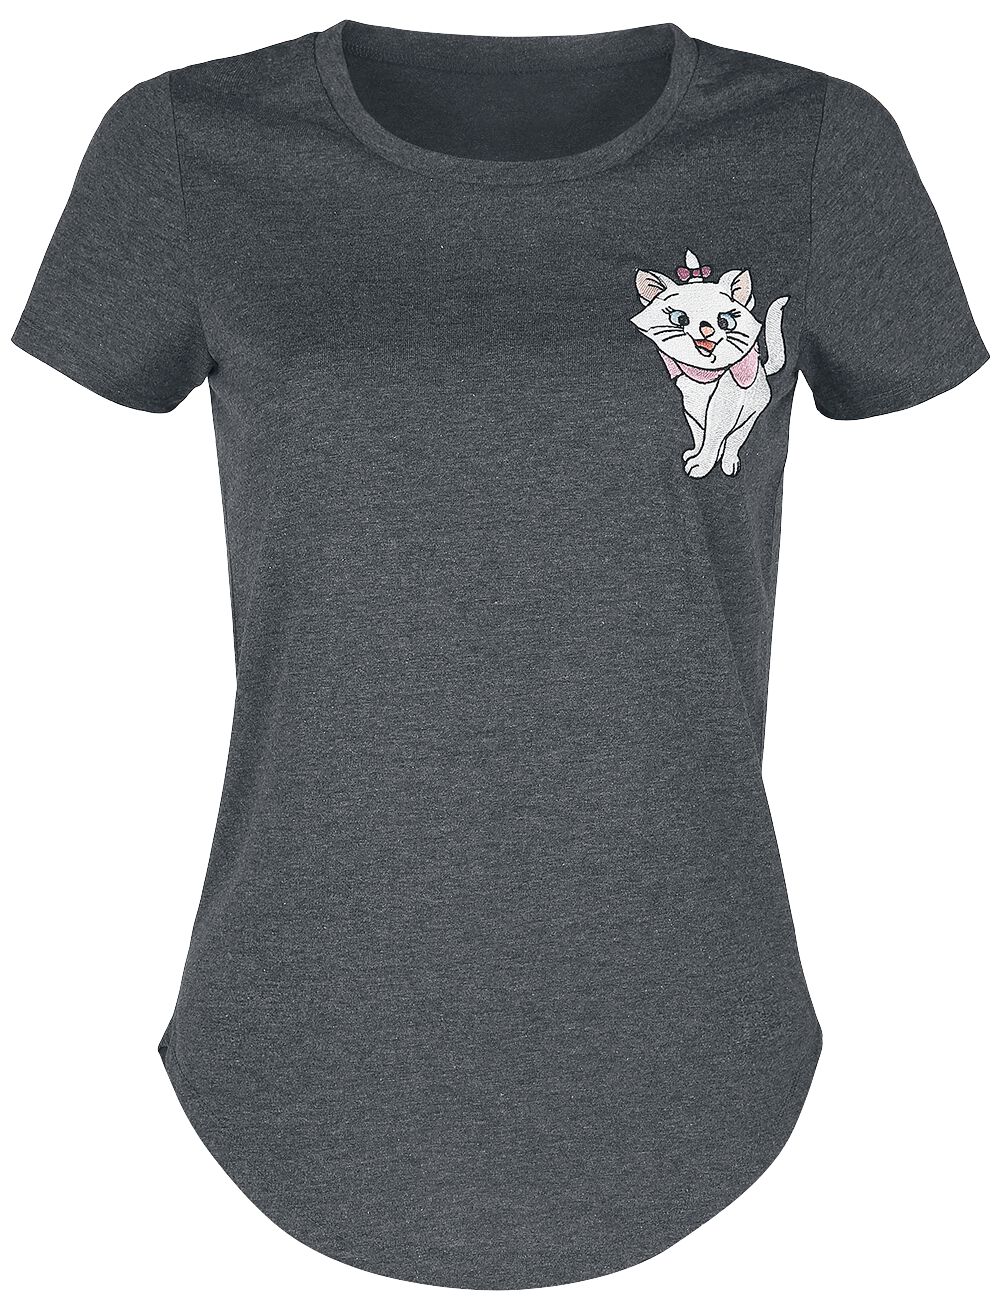 Aristocats Aristocats - Marie T-Shirt mottled grey